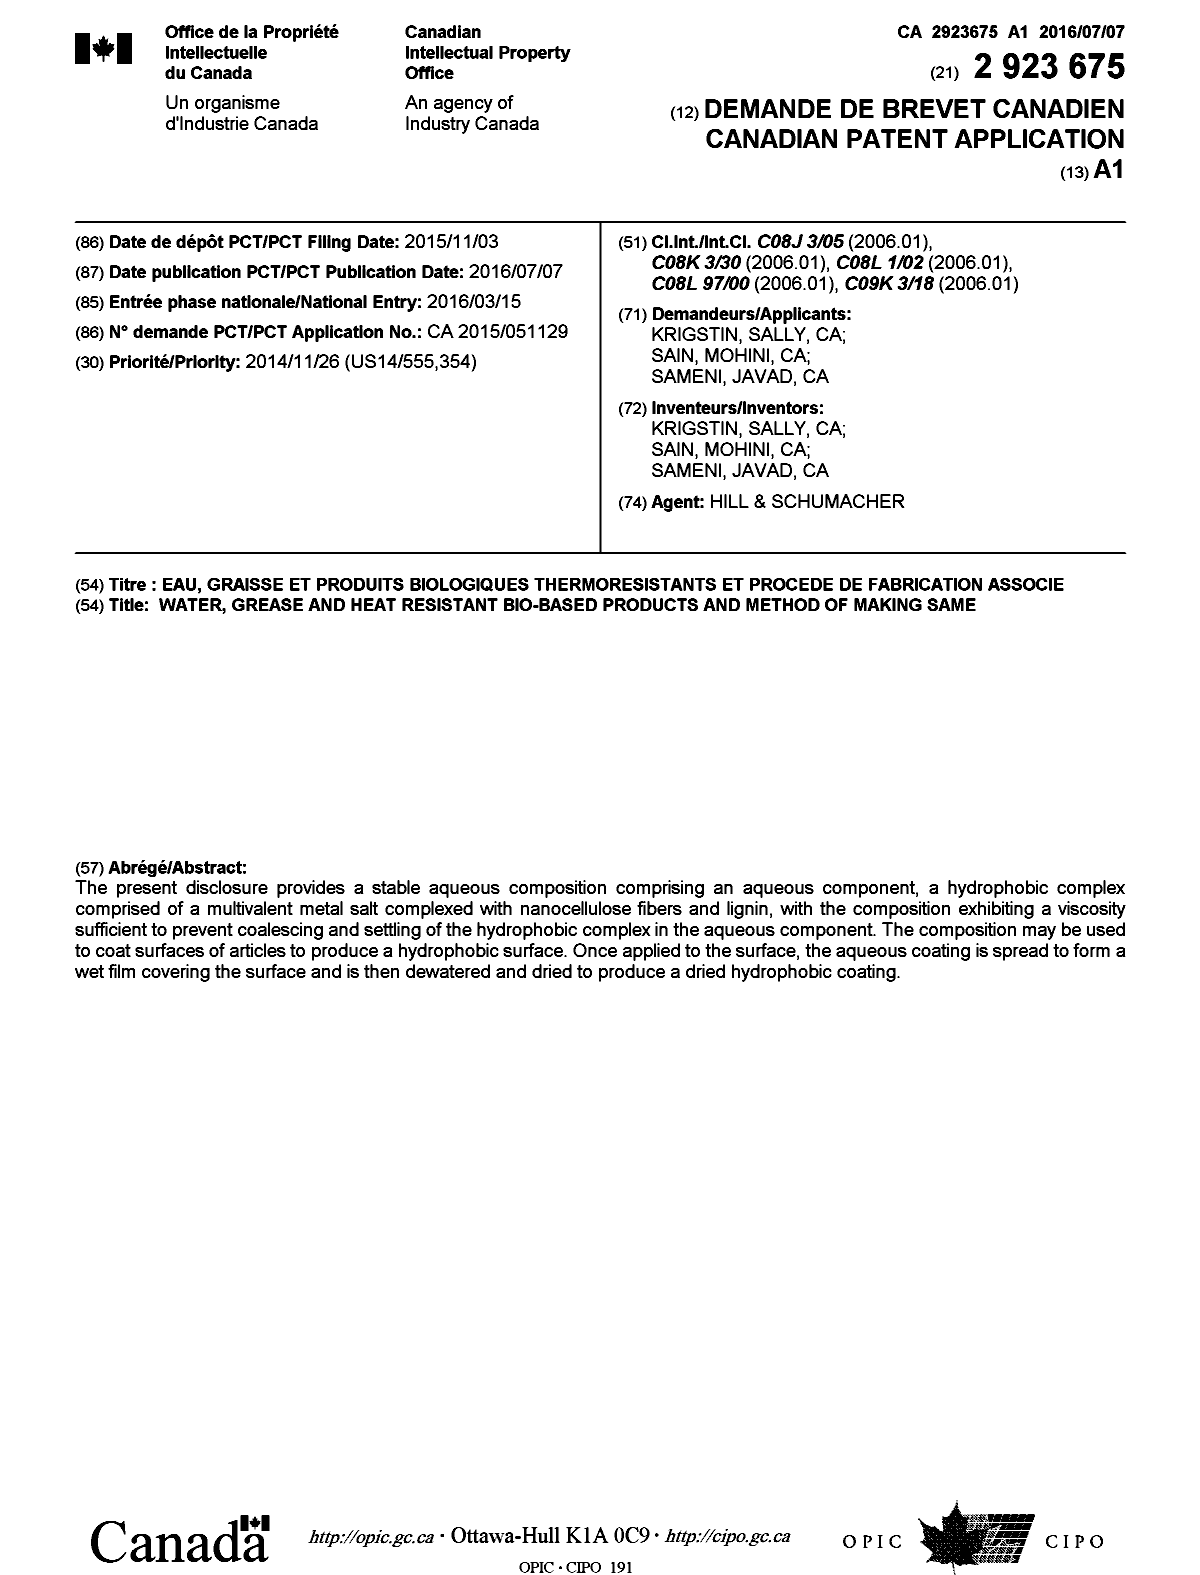 Document de brevet canadien 2923675. Page couverture 20151207. Image 1 de 1